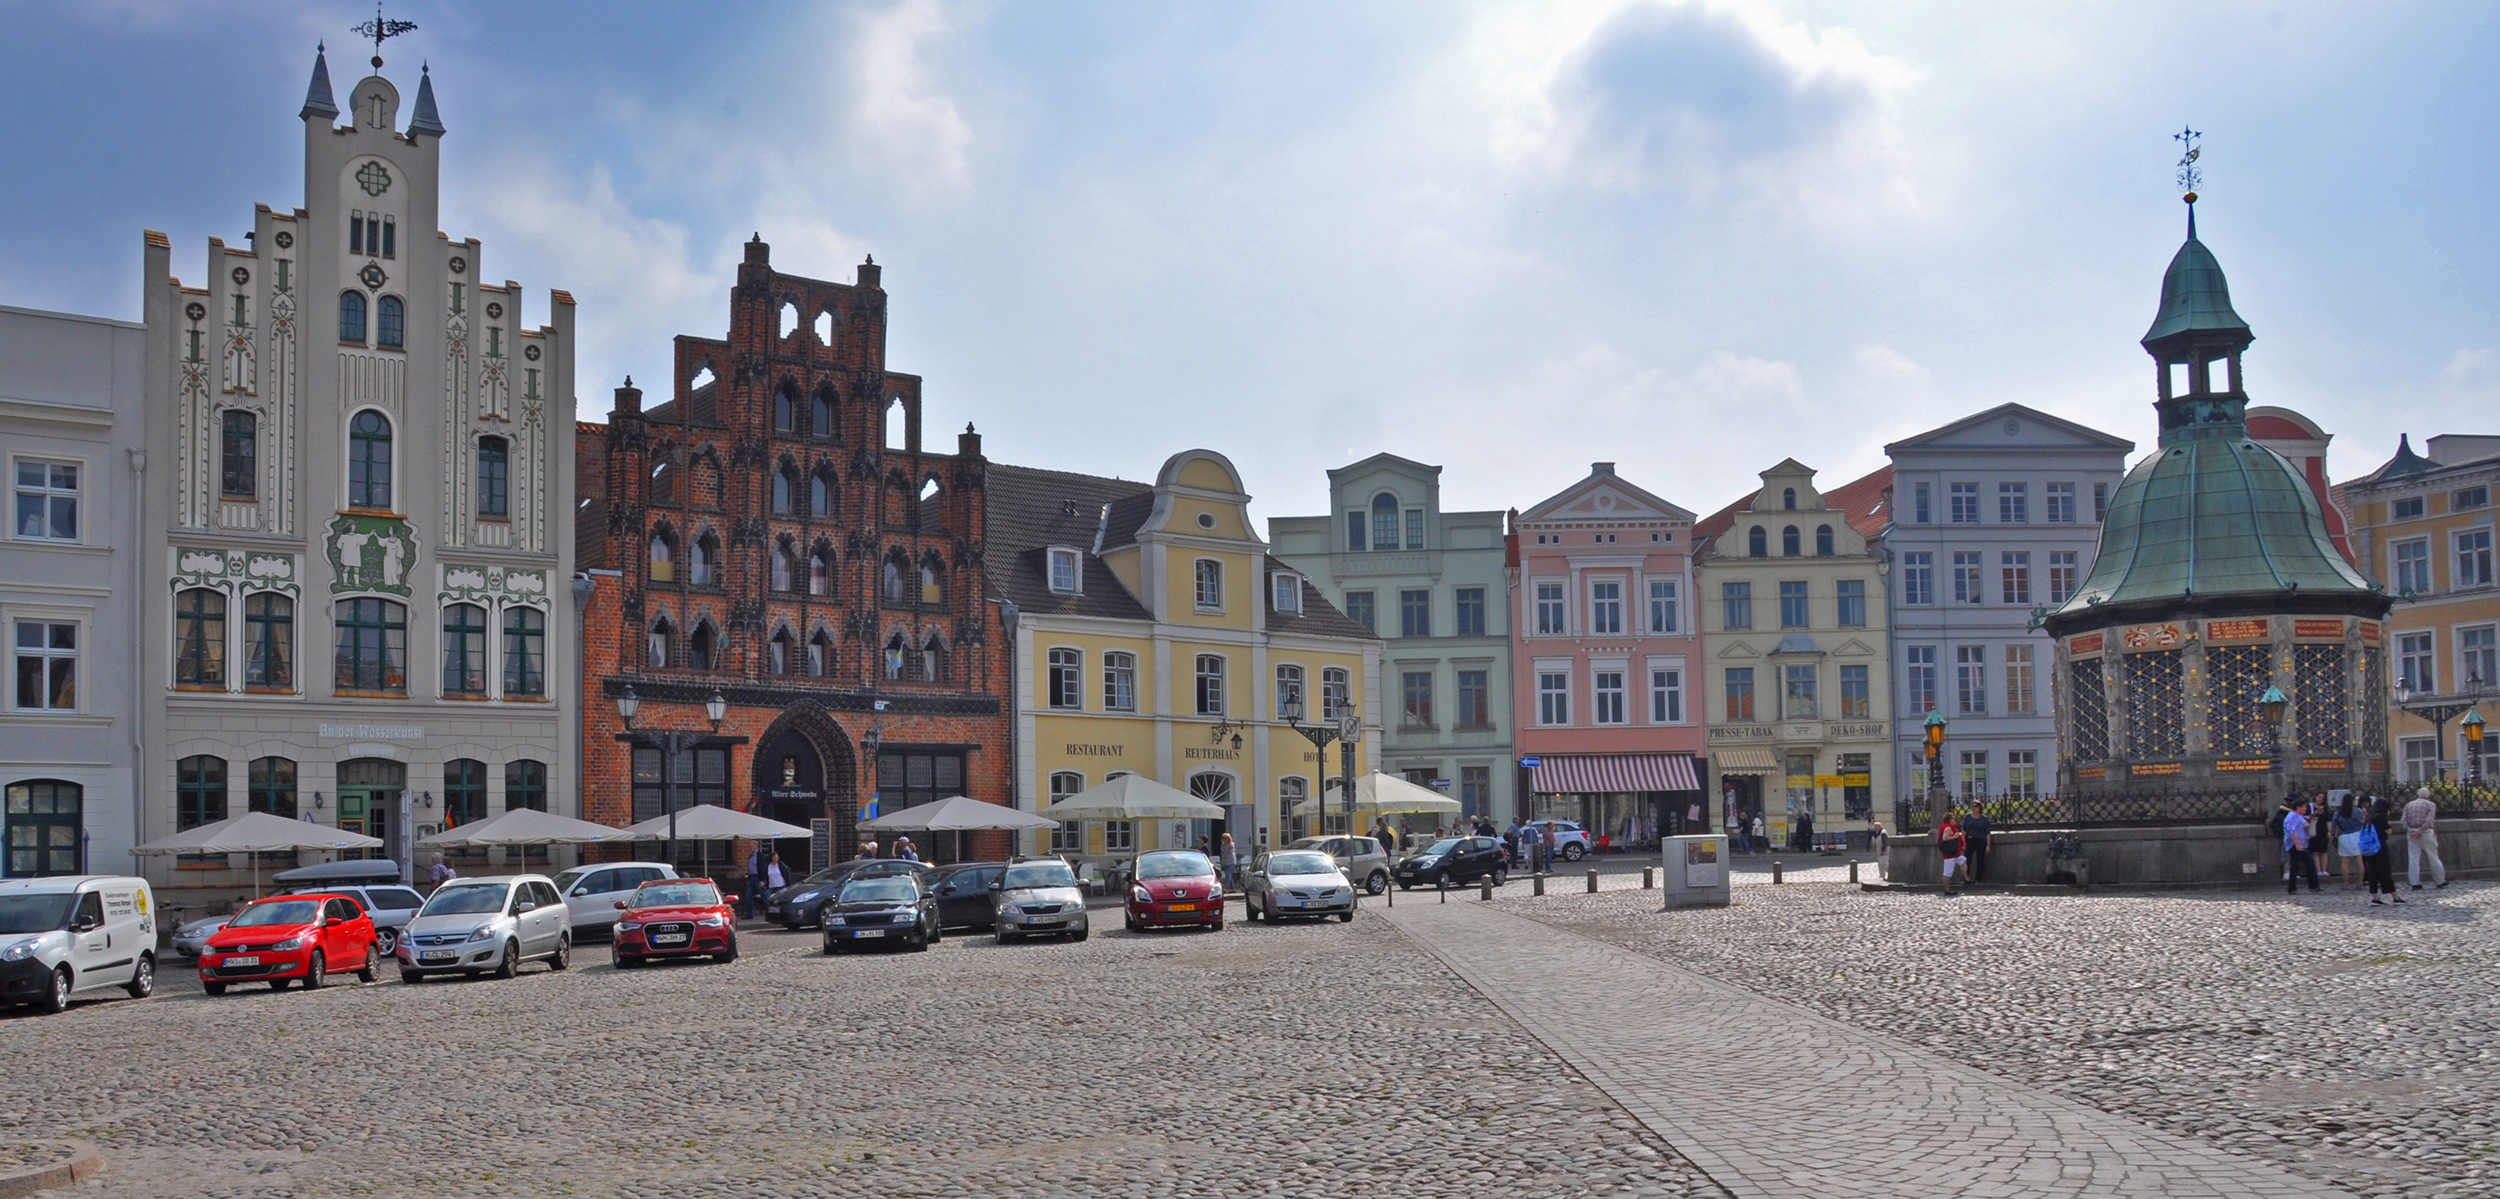 Det vackra torget i Wismar med Alter Schwede (det röda huset) får inte delta i tävlingen.